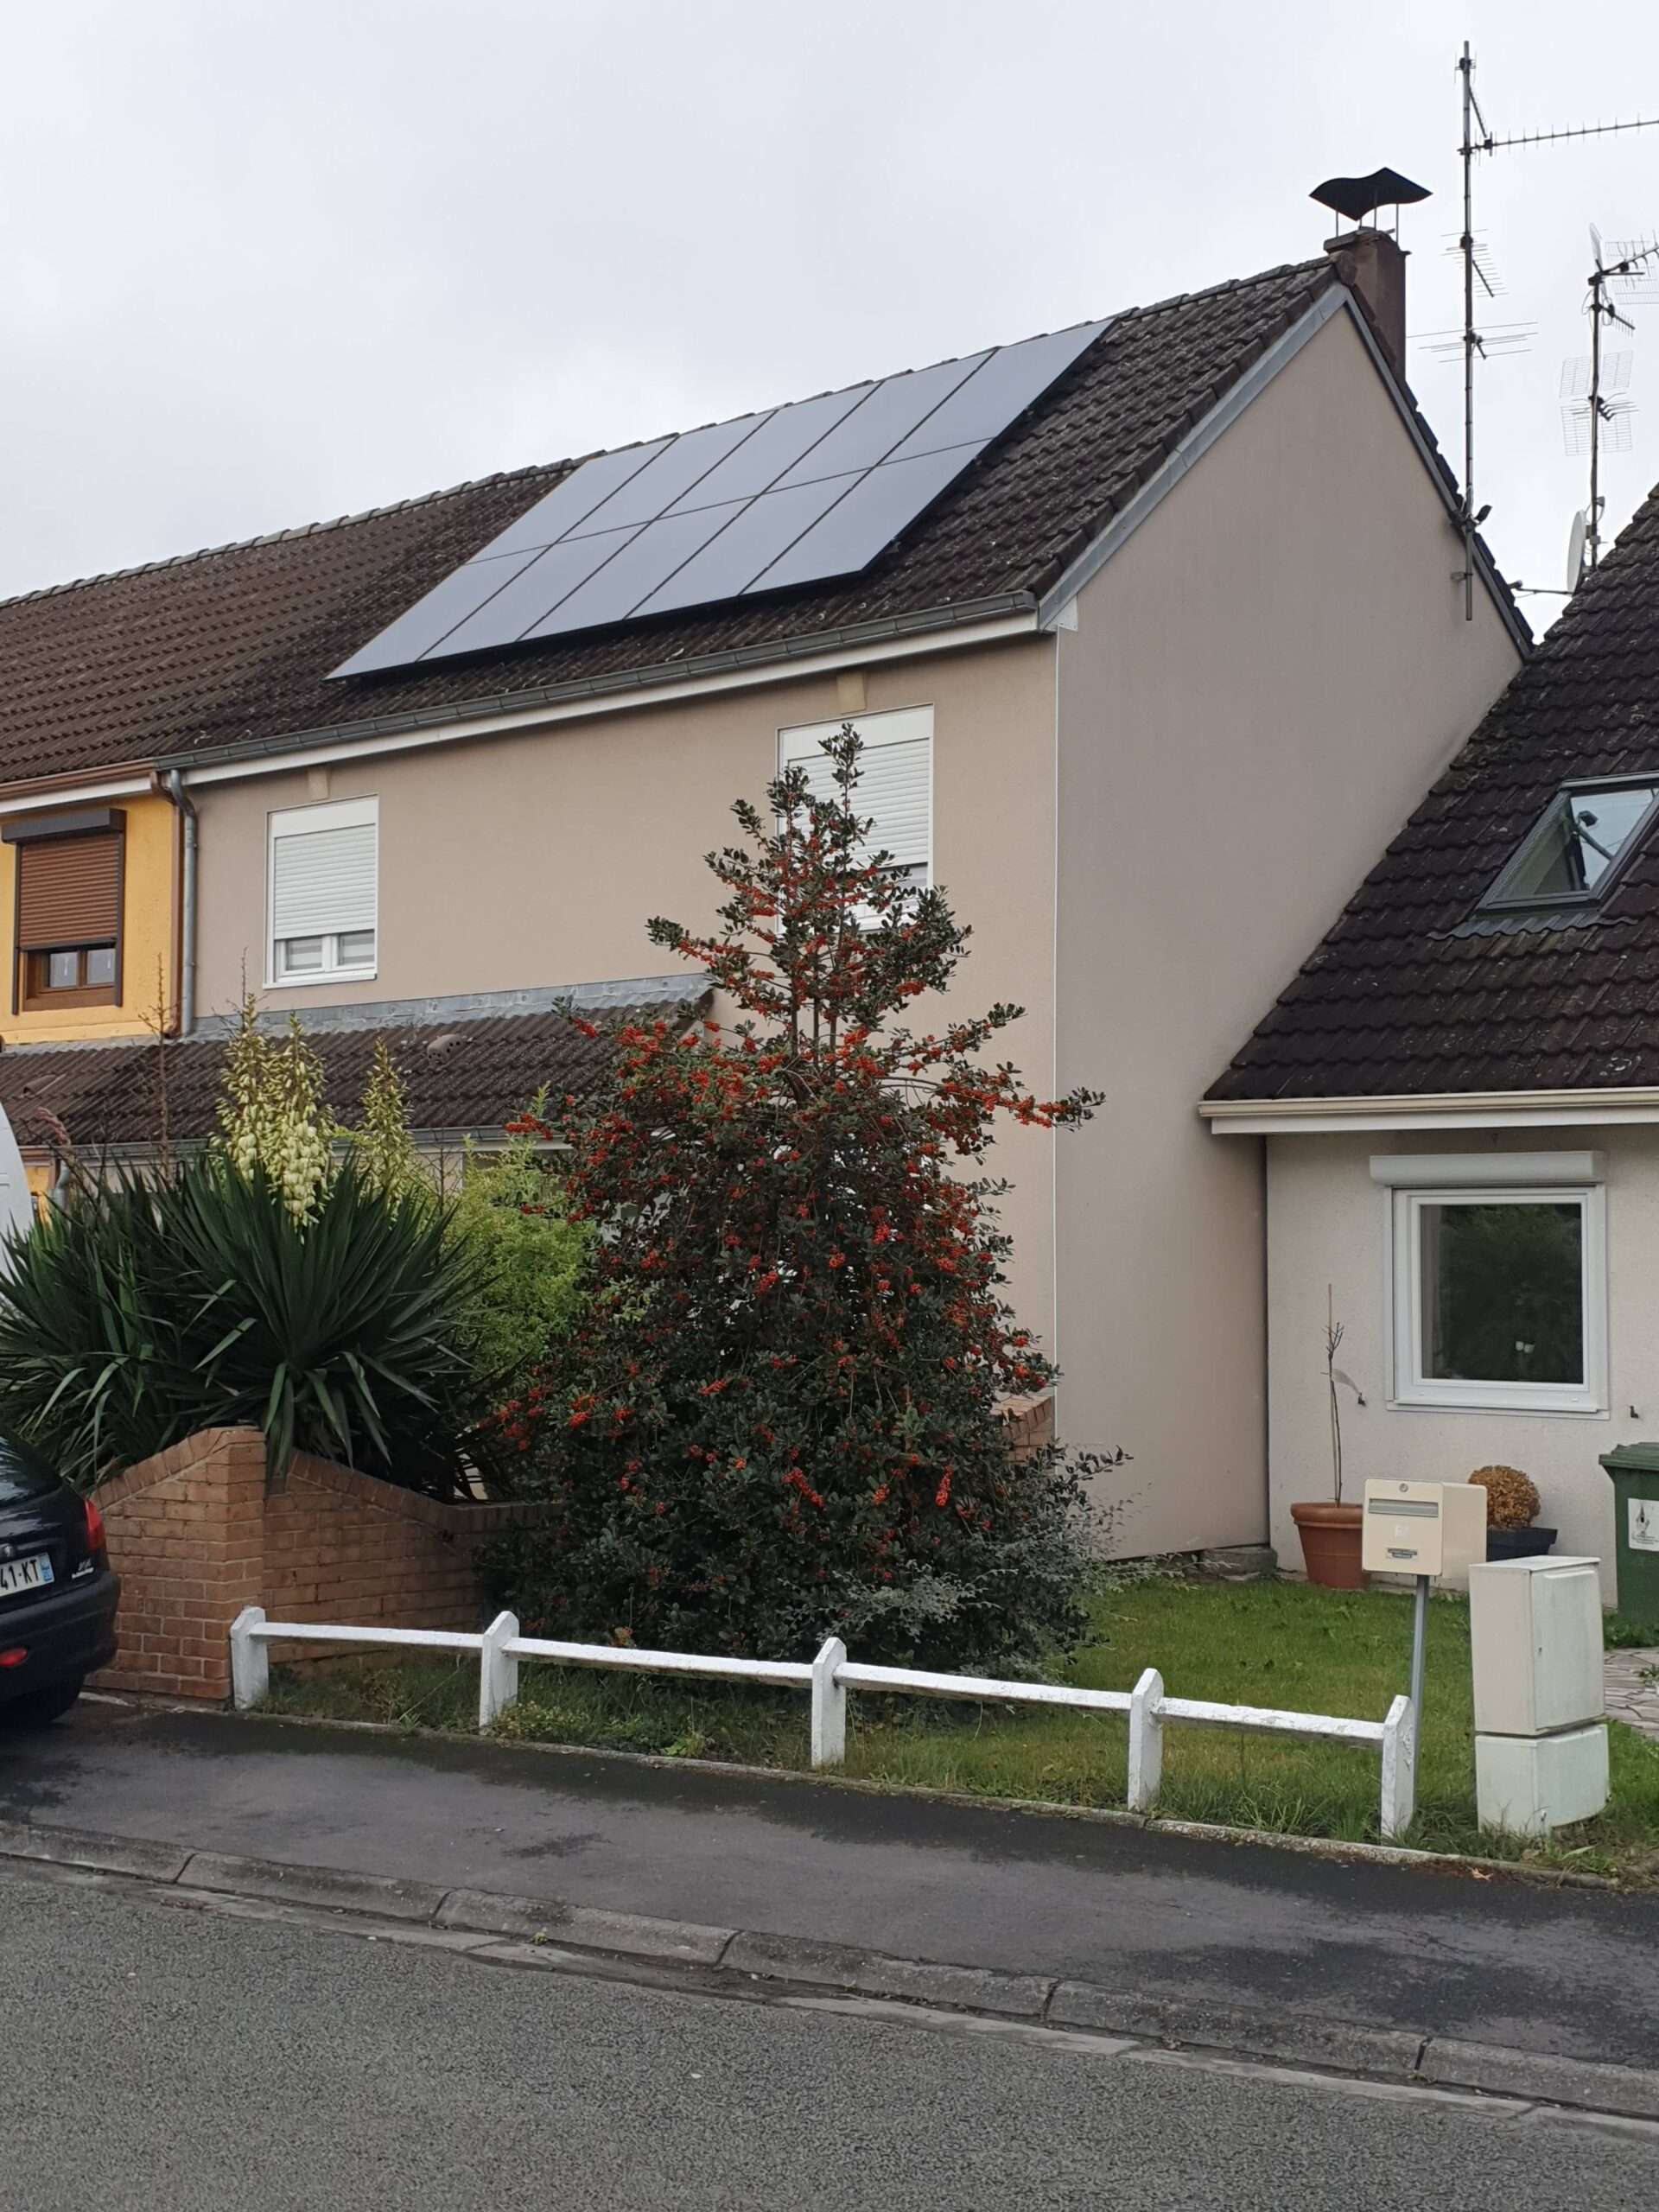 Maison de quartier avec Panneaux photovoltaïques installation hauts de france